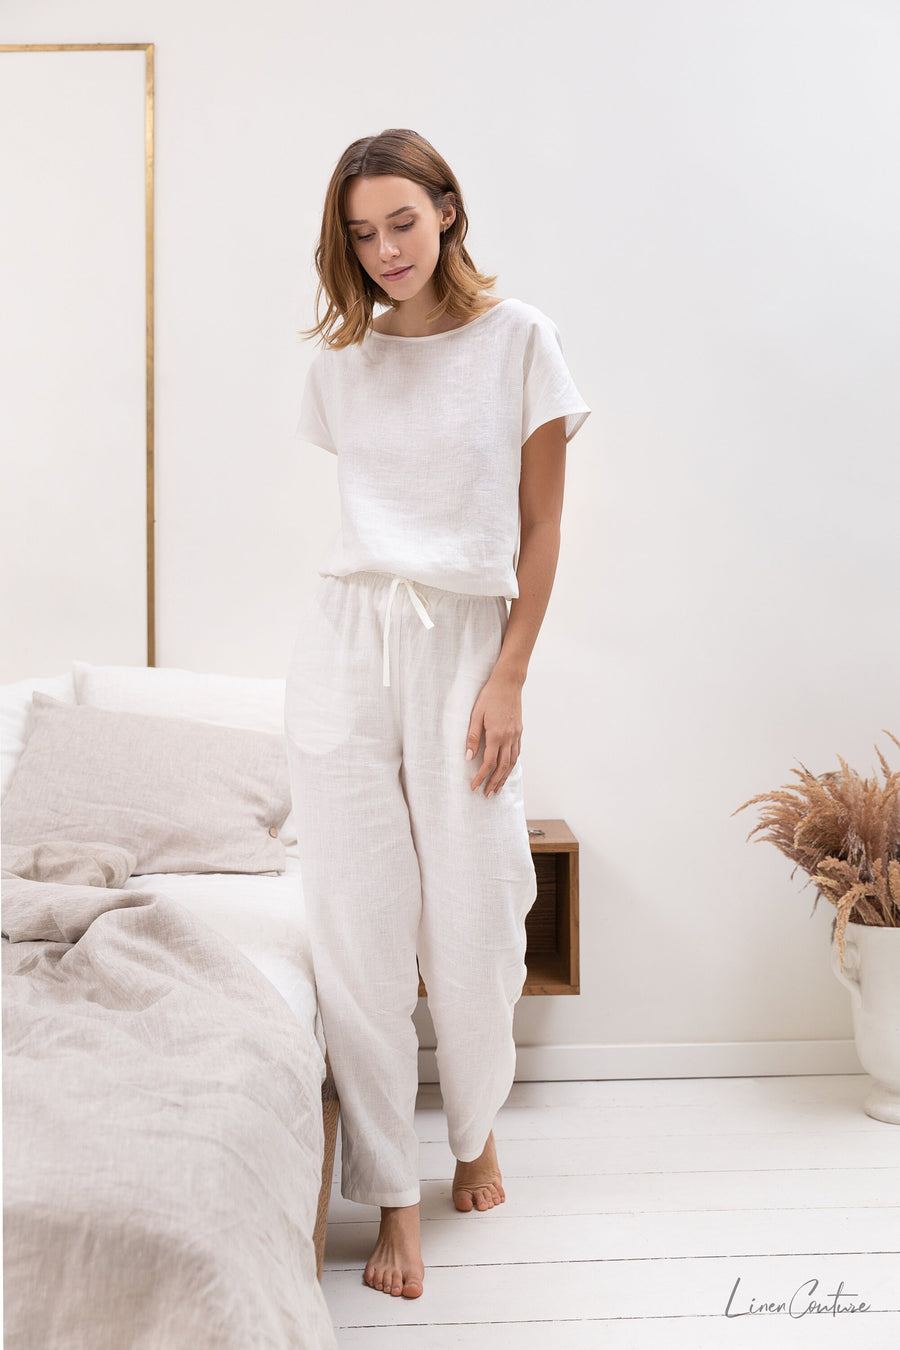 White linen / Natural Linen Pajama set / Linen loungewear / Linen sleepwear